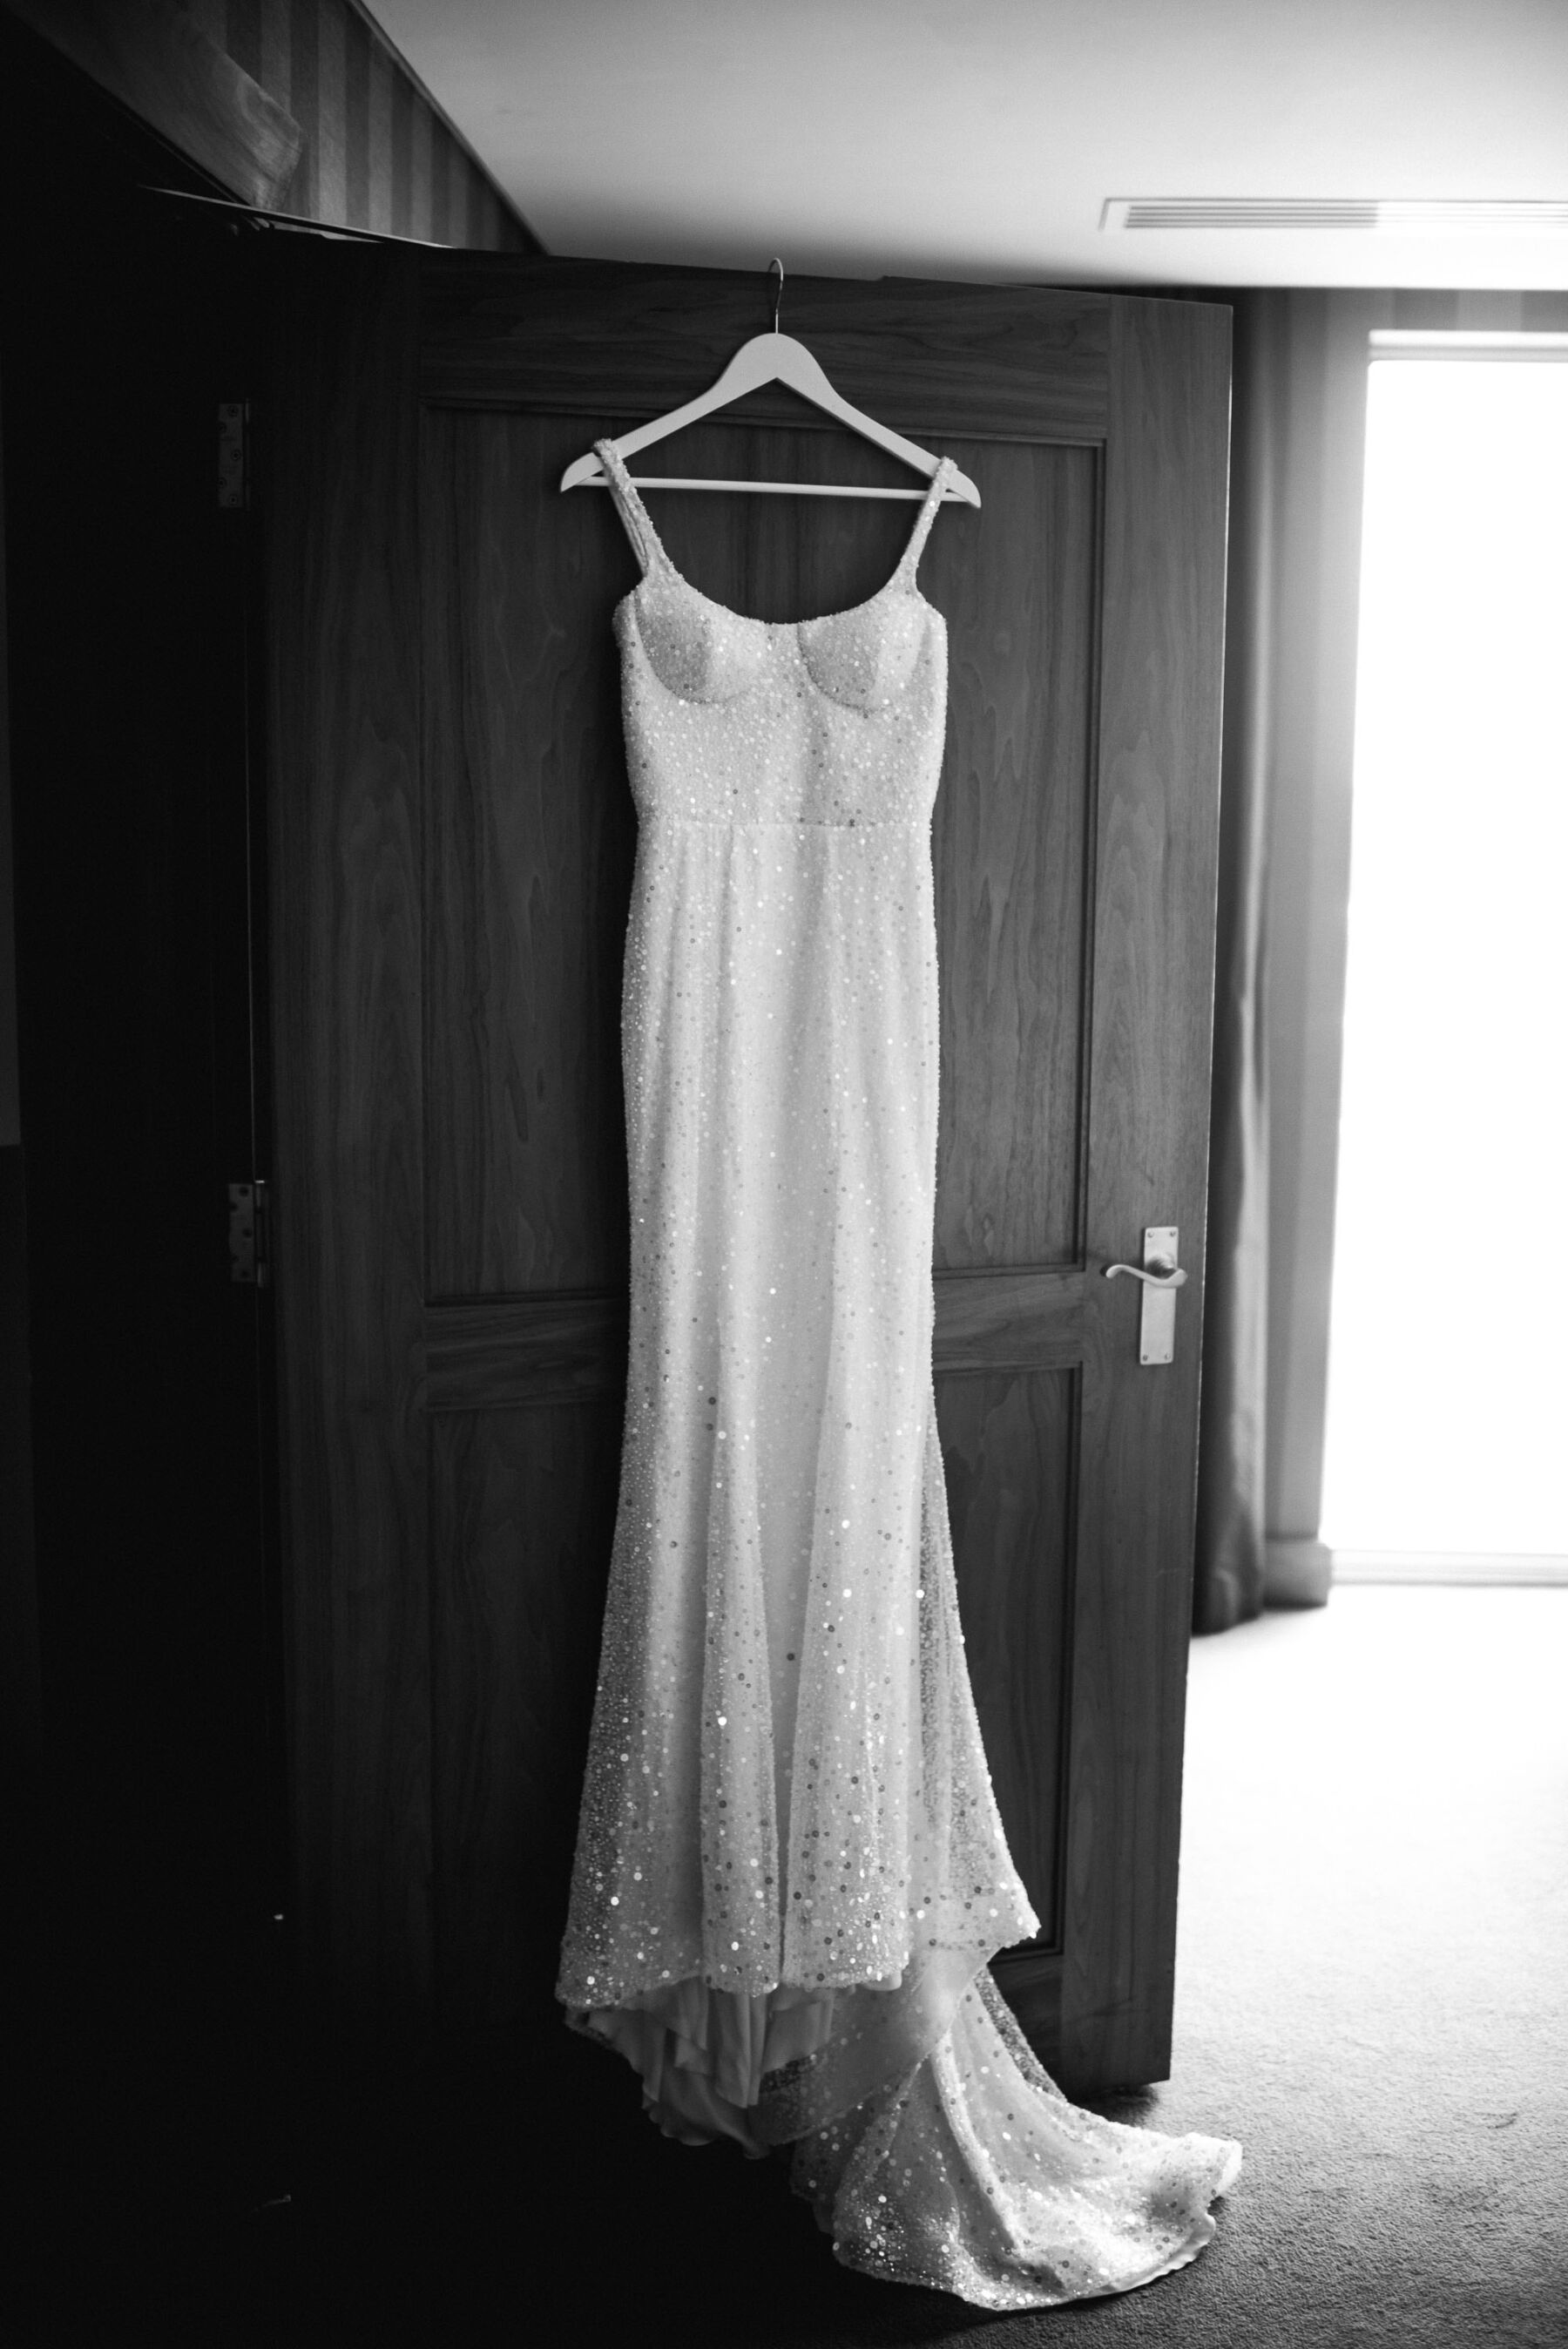 Kyha Studios sequin wedding dress